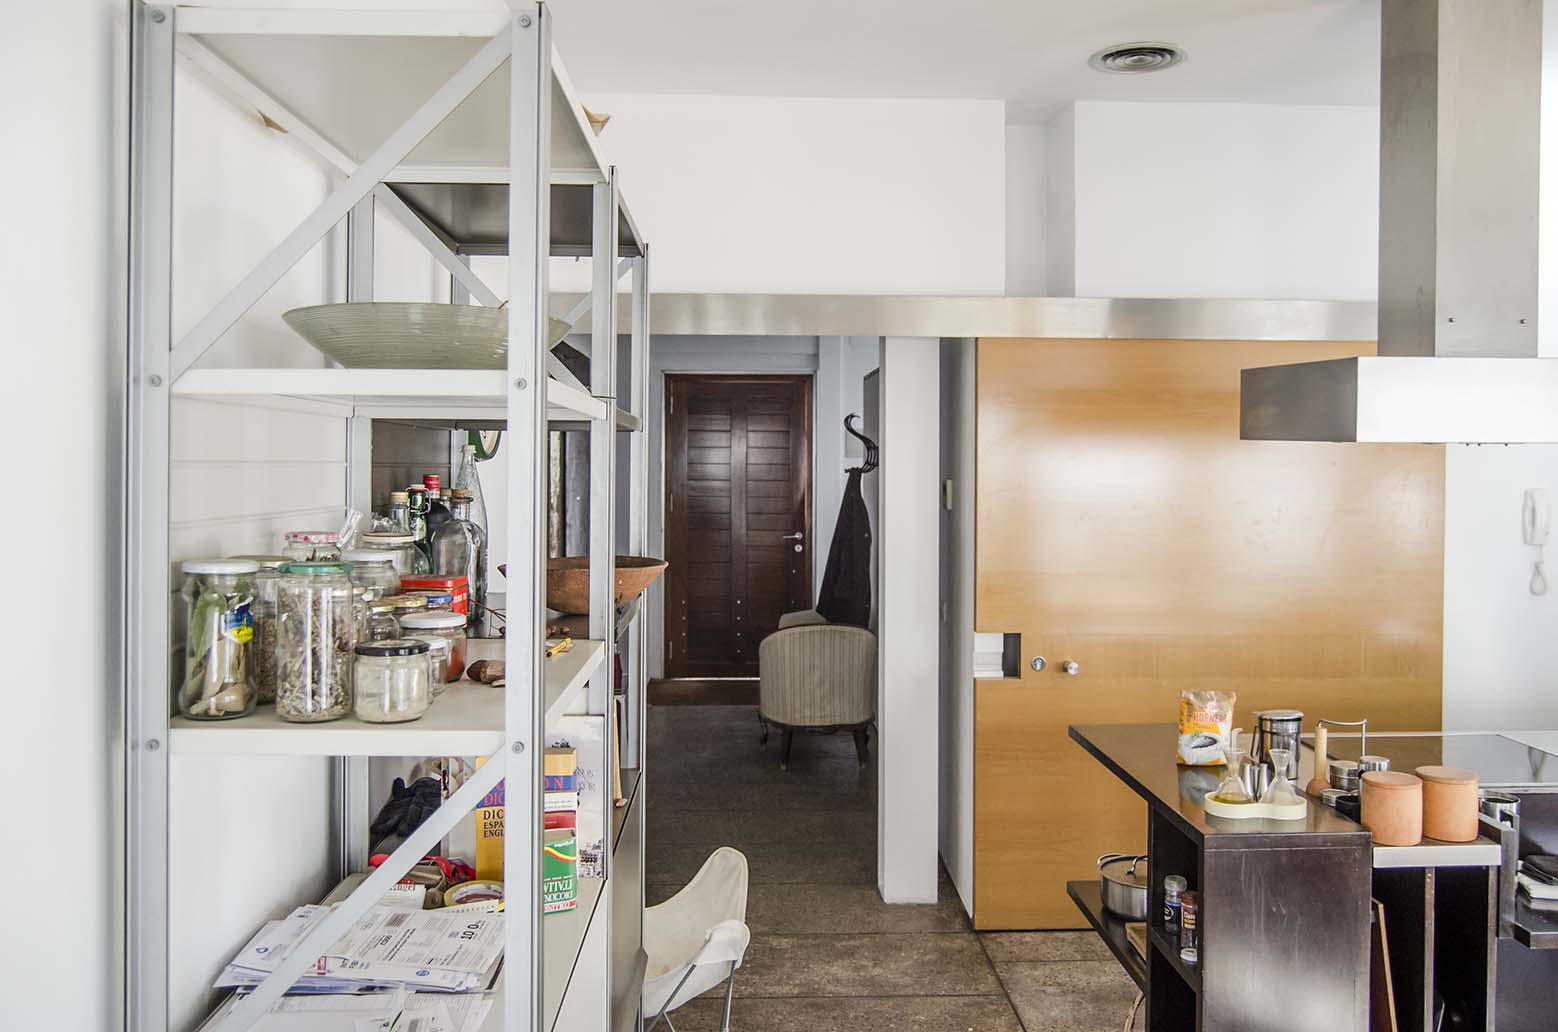 La puerta corredera de la cocina es un panel desplazable que al abrirse por completo, permite integrar el vestíbulo y la cocina en un único espacio, al eliminar las mochetas.